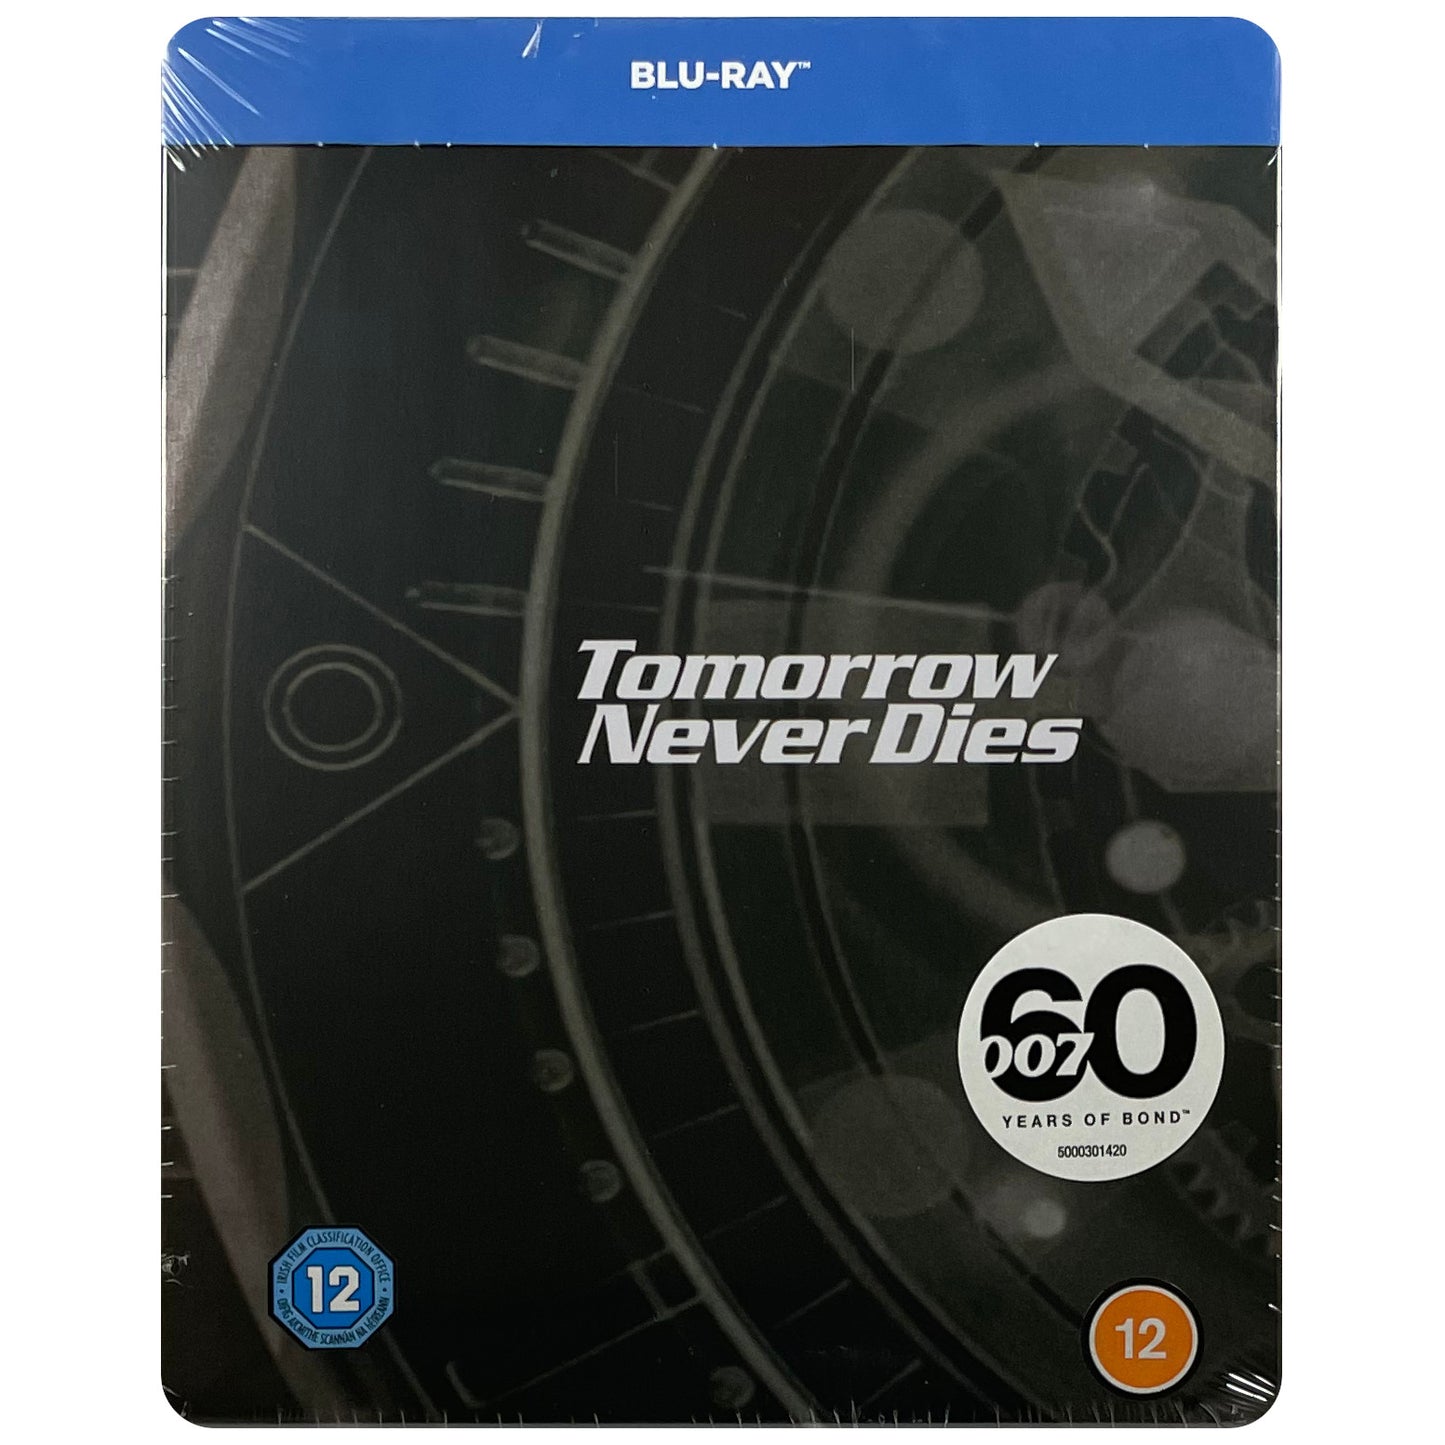 Tomorrow Never Dies Blu-Ray Steelbook